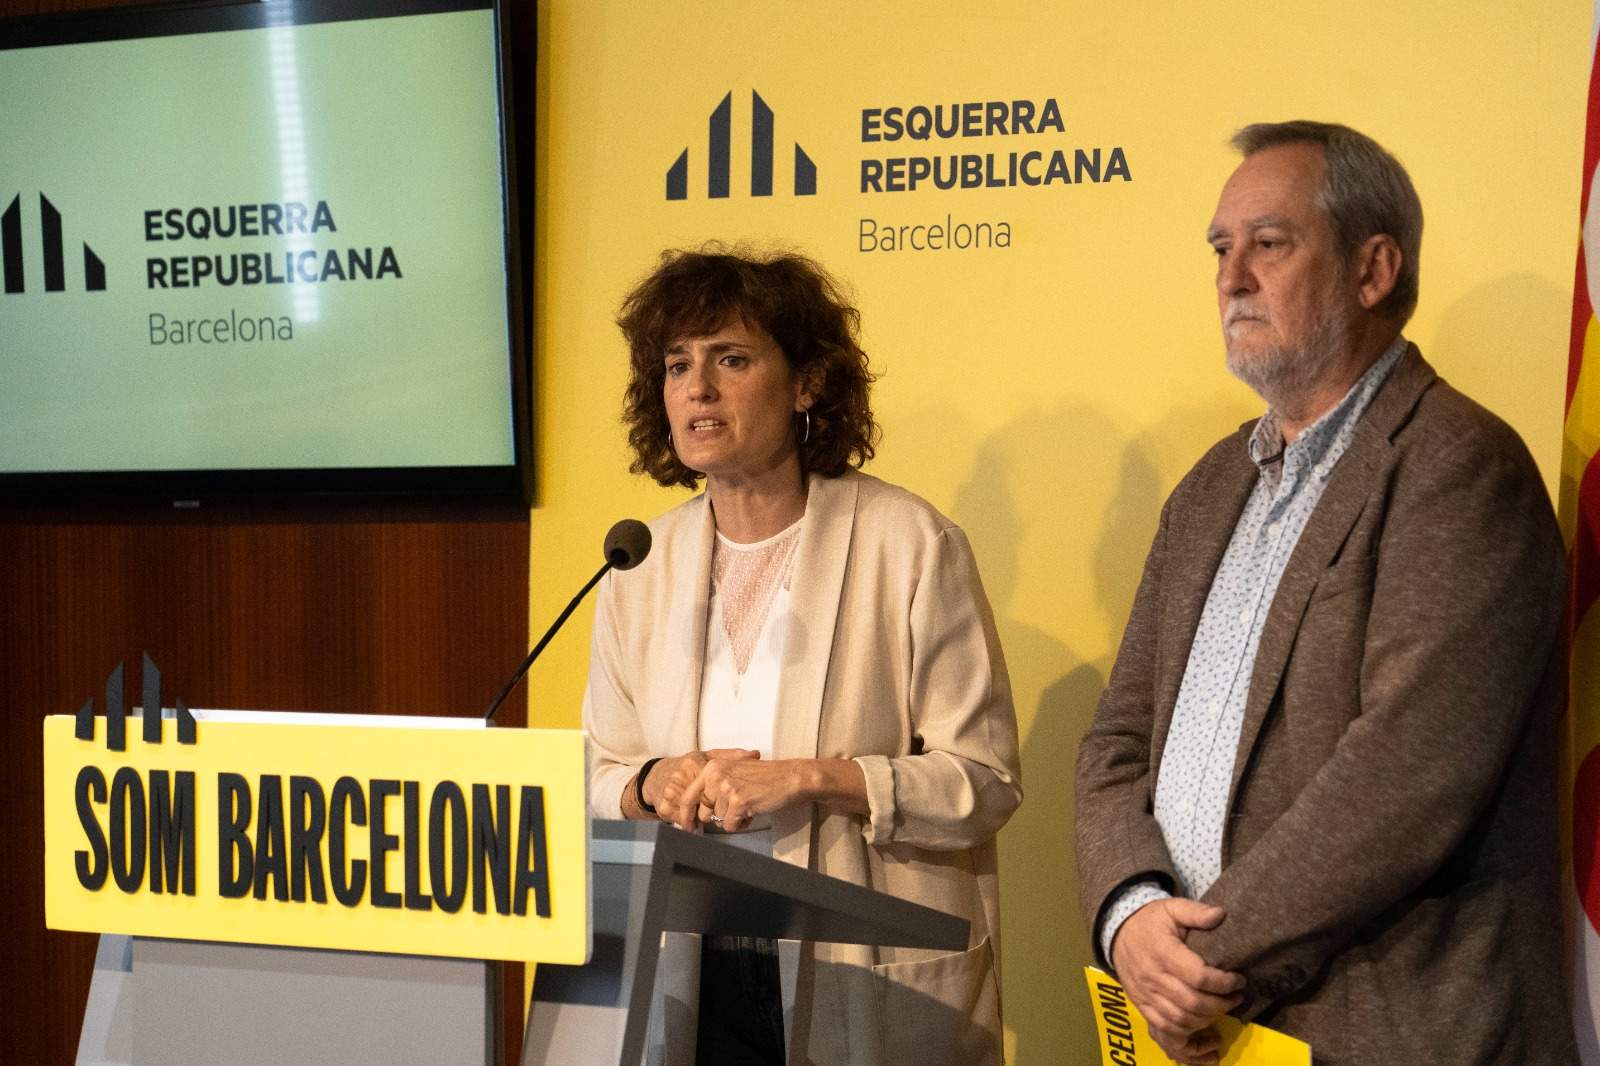 Turisme, drets socials i ús social del català, les àrees que gestionarà ERC si entra al govern de Barcelona